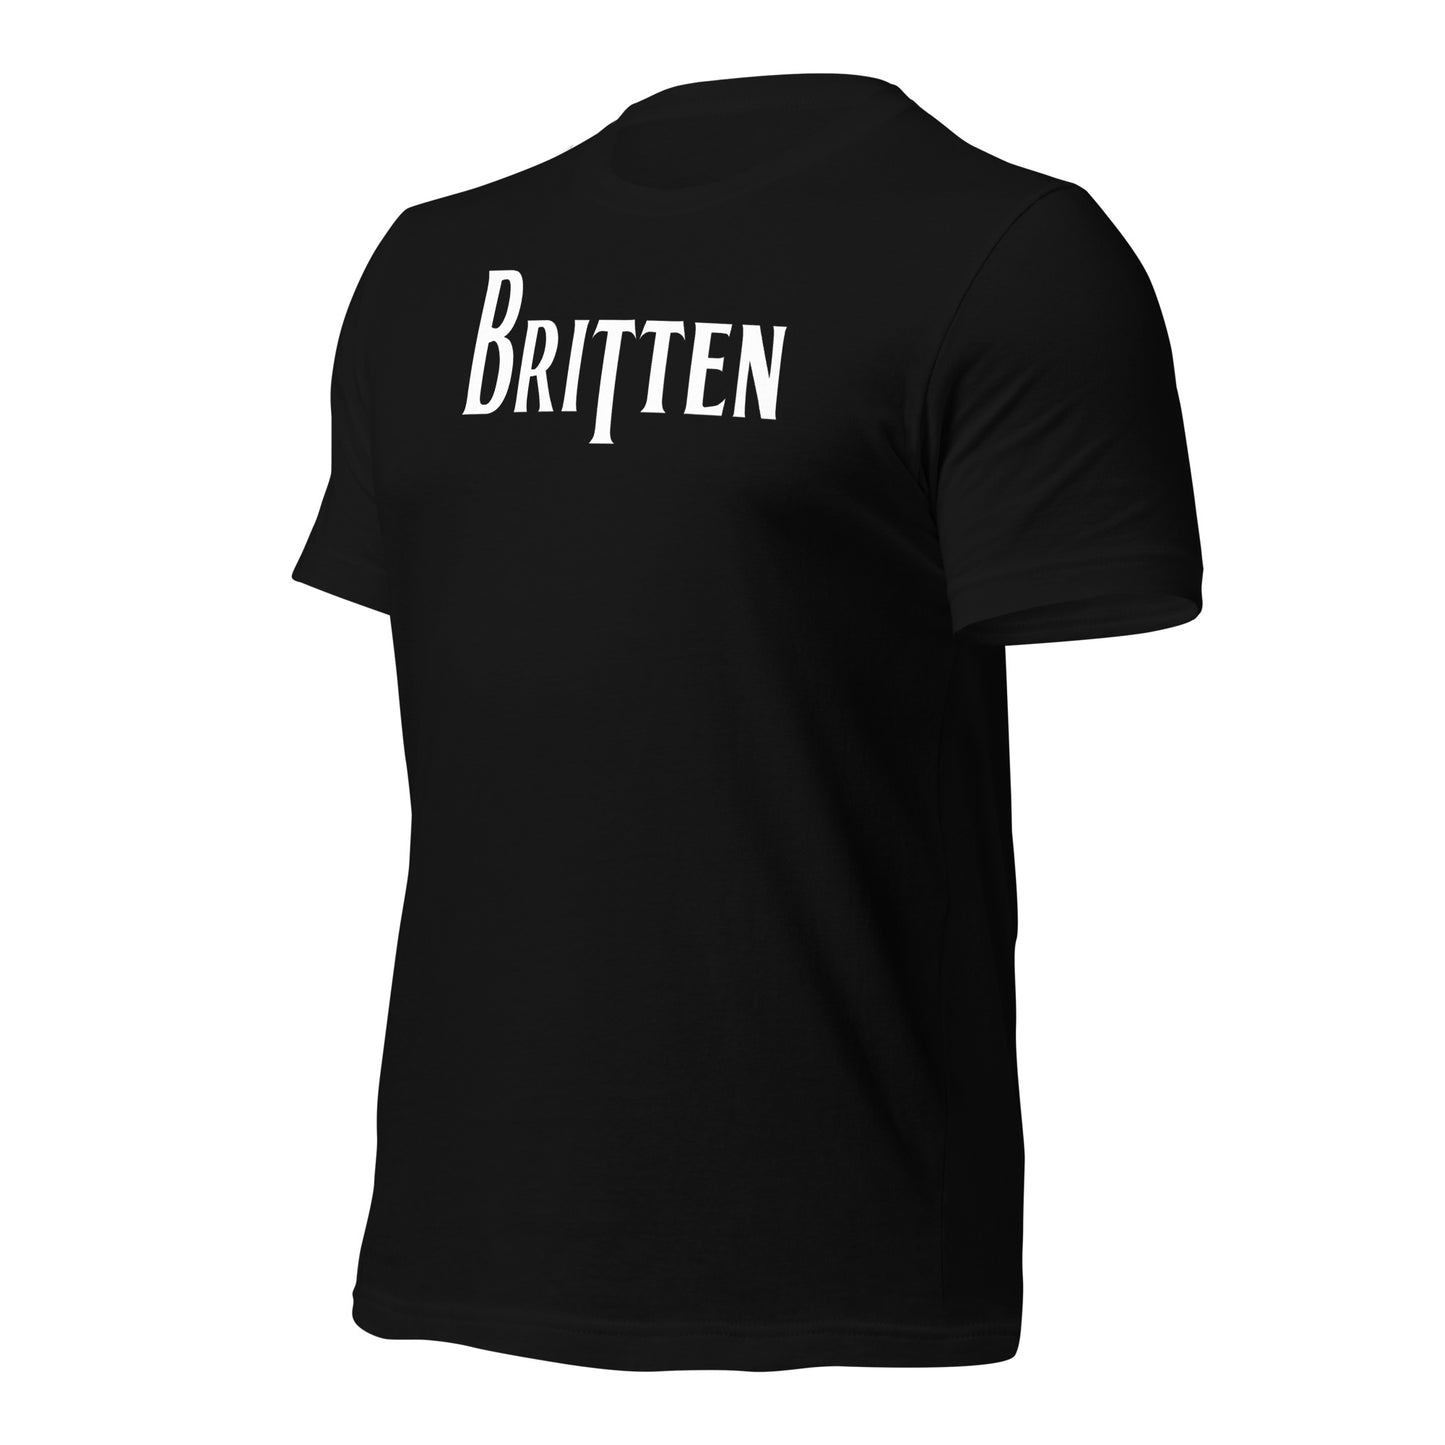 Benjamin Britten - Band Tees Unisex t-shirt